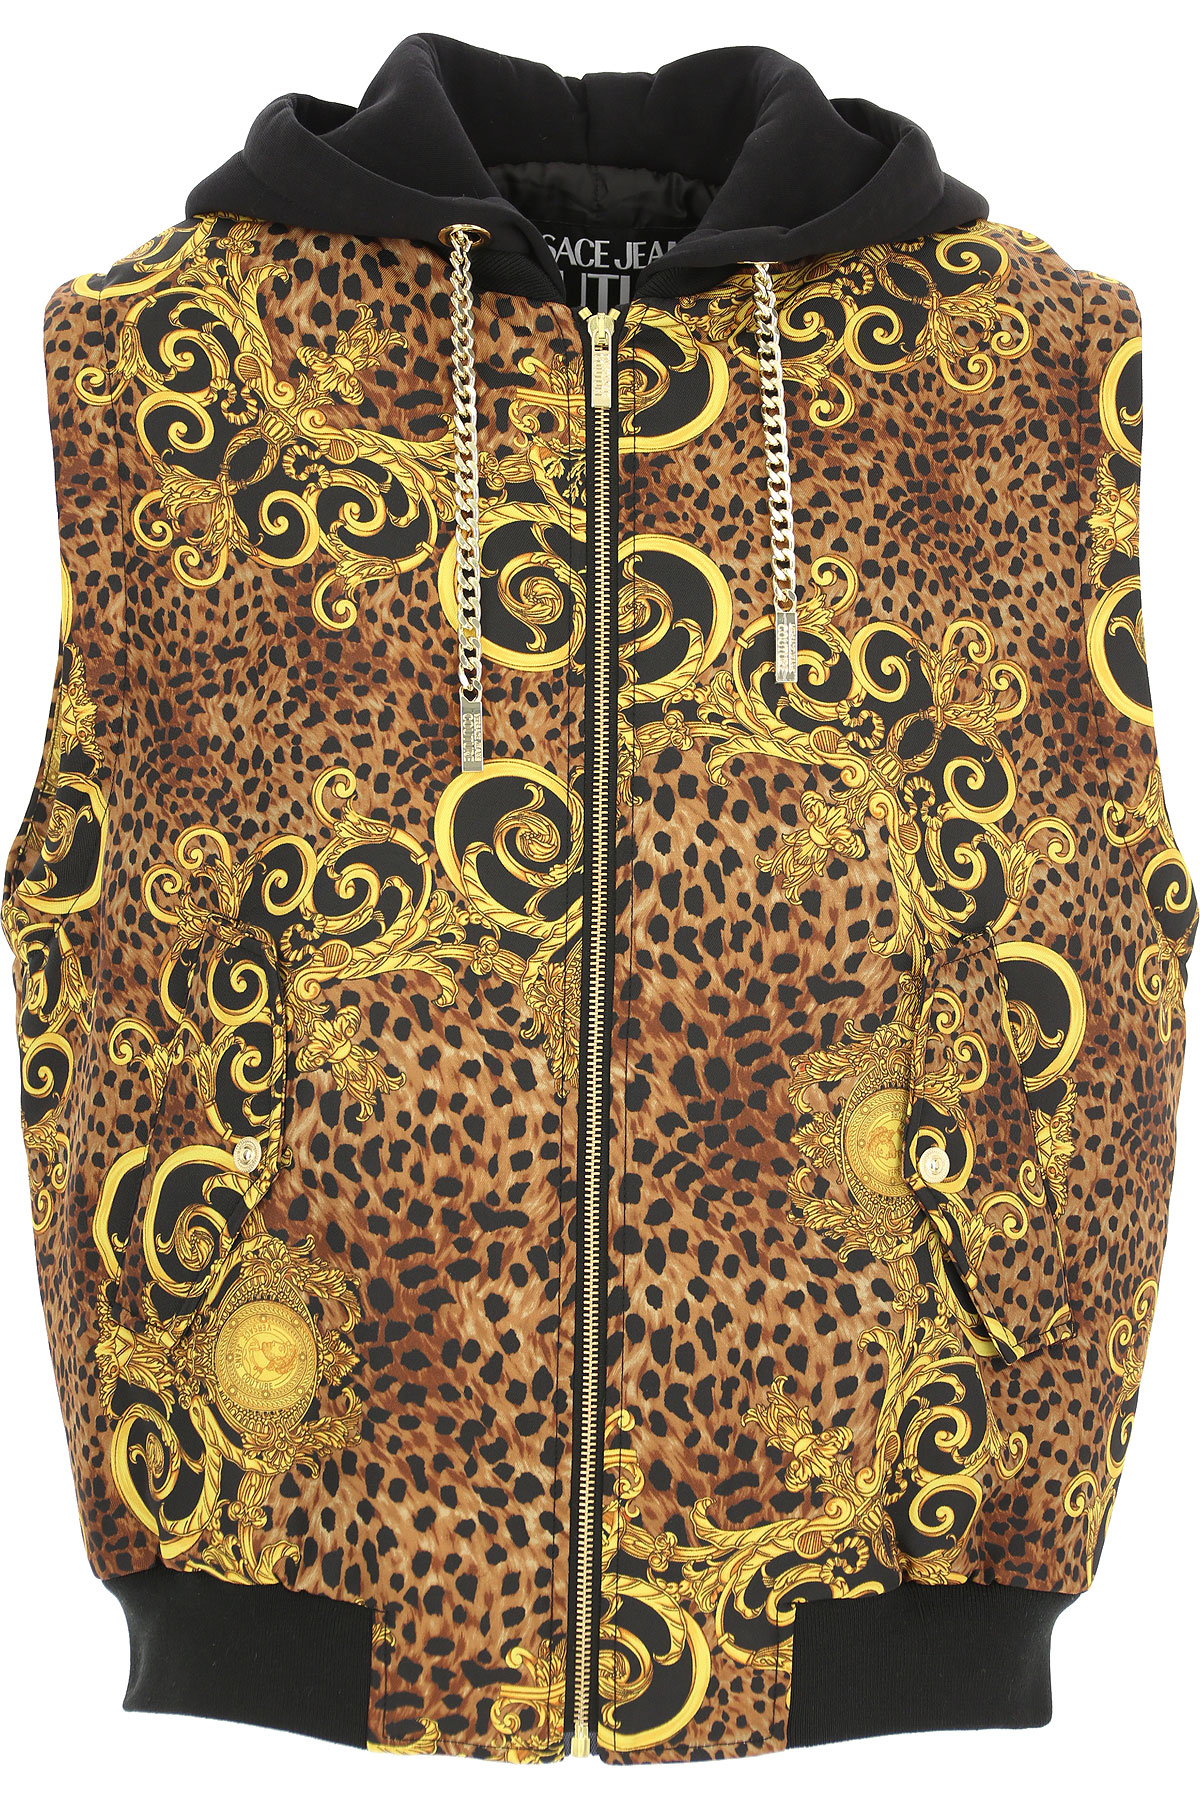 Versace Jeans Couture Jacke für Herren Günstig im Sale, Leopardenbraun, Polyester, 2017, L S XL